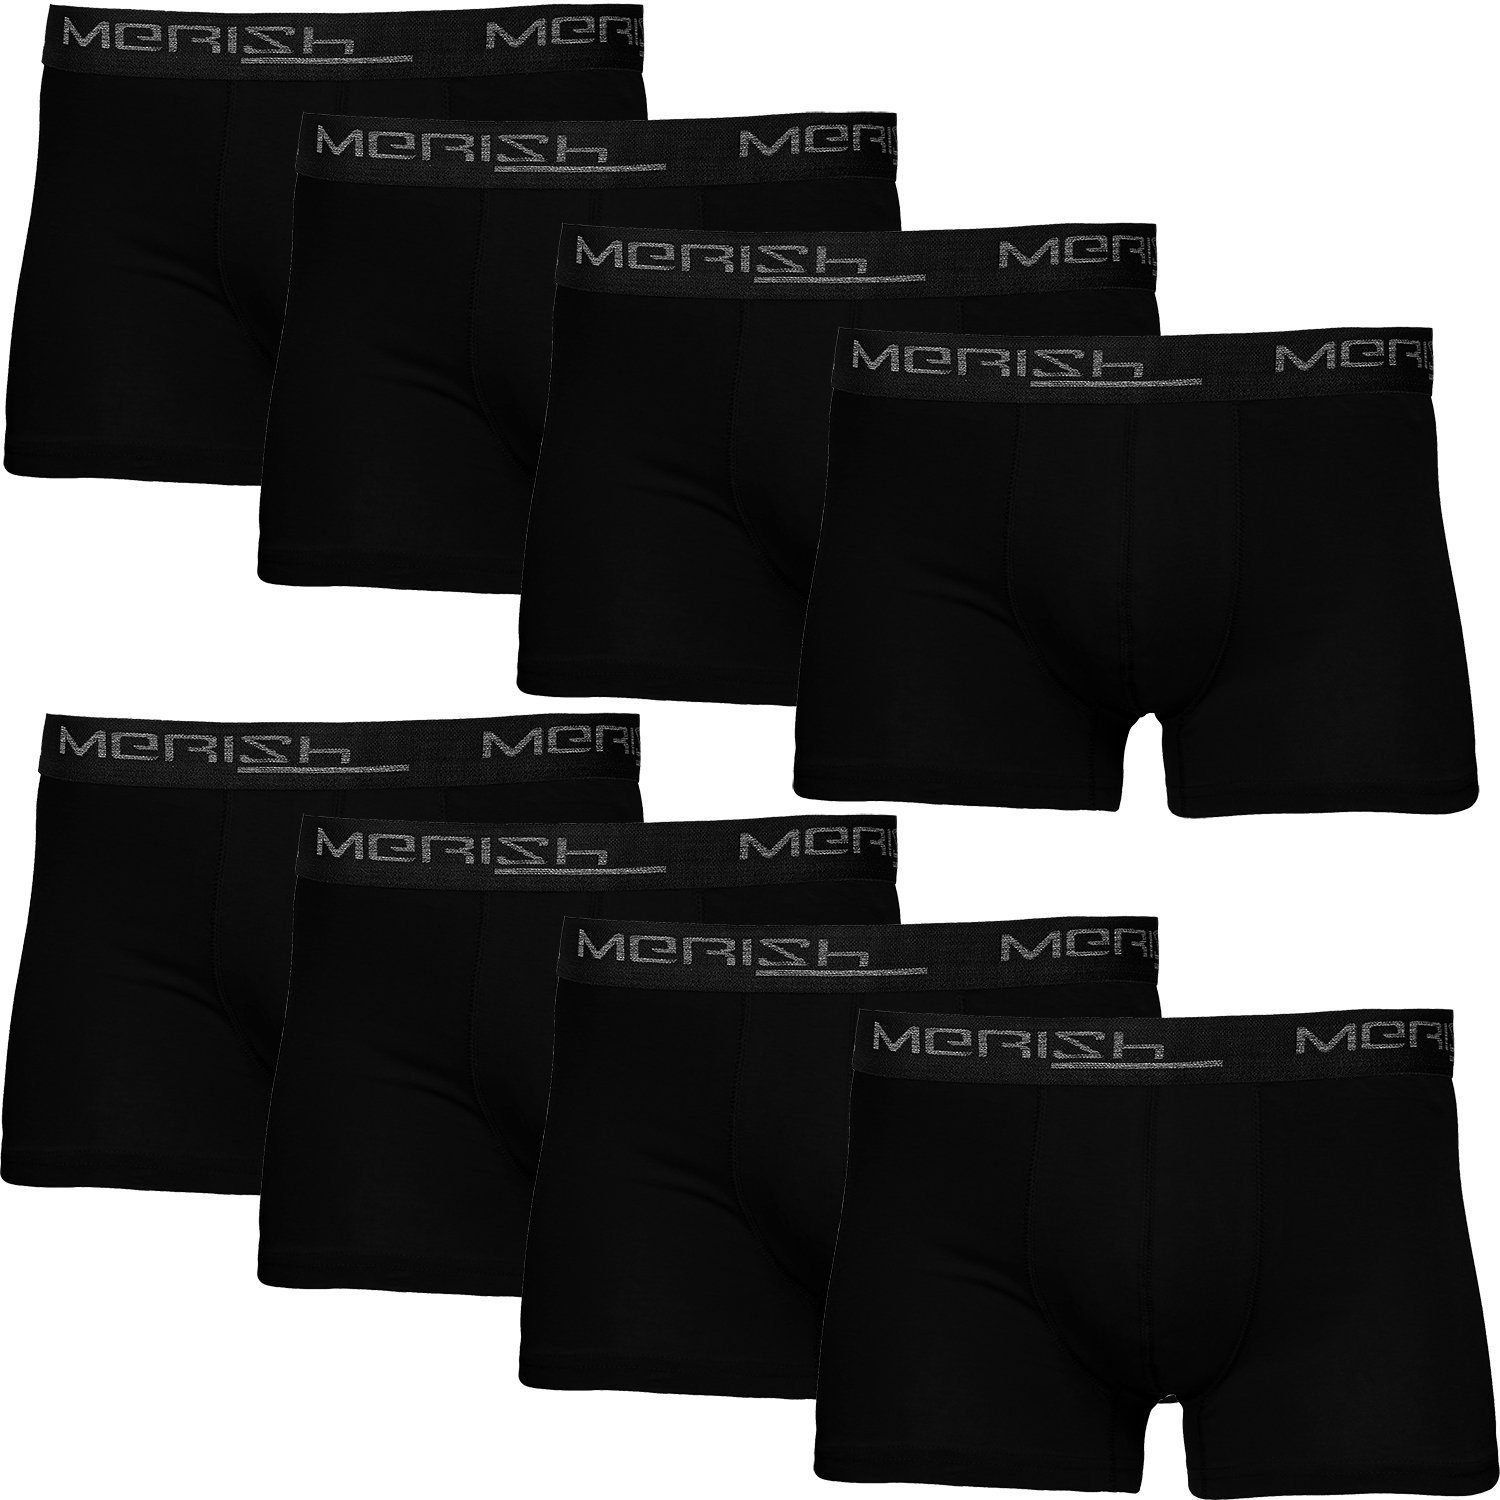 MERISH Boxershorts 8 Stück S-7XL Männer Unterhosen Schwarz